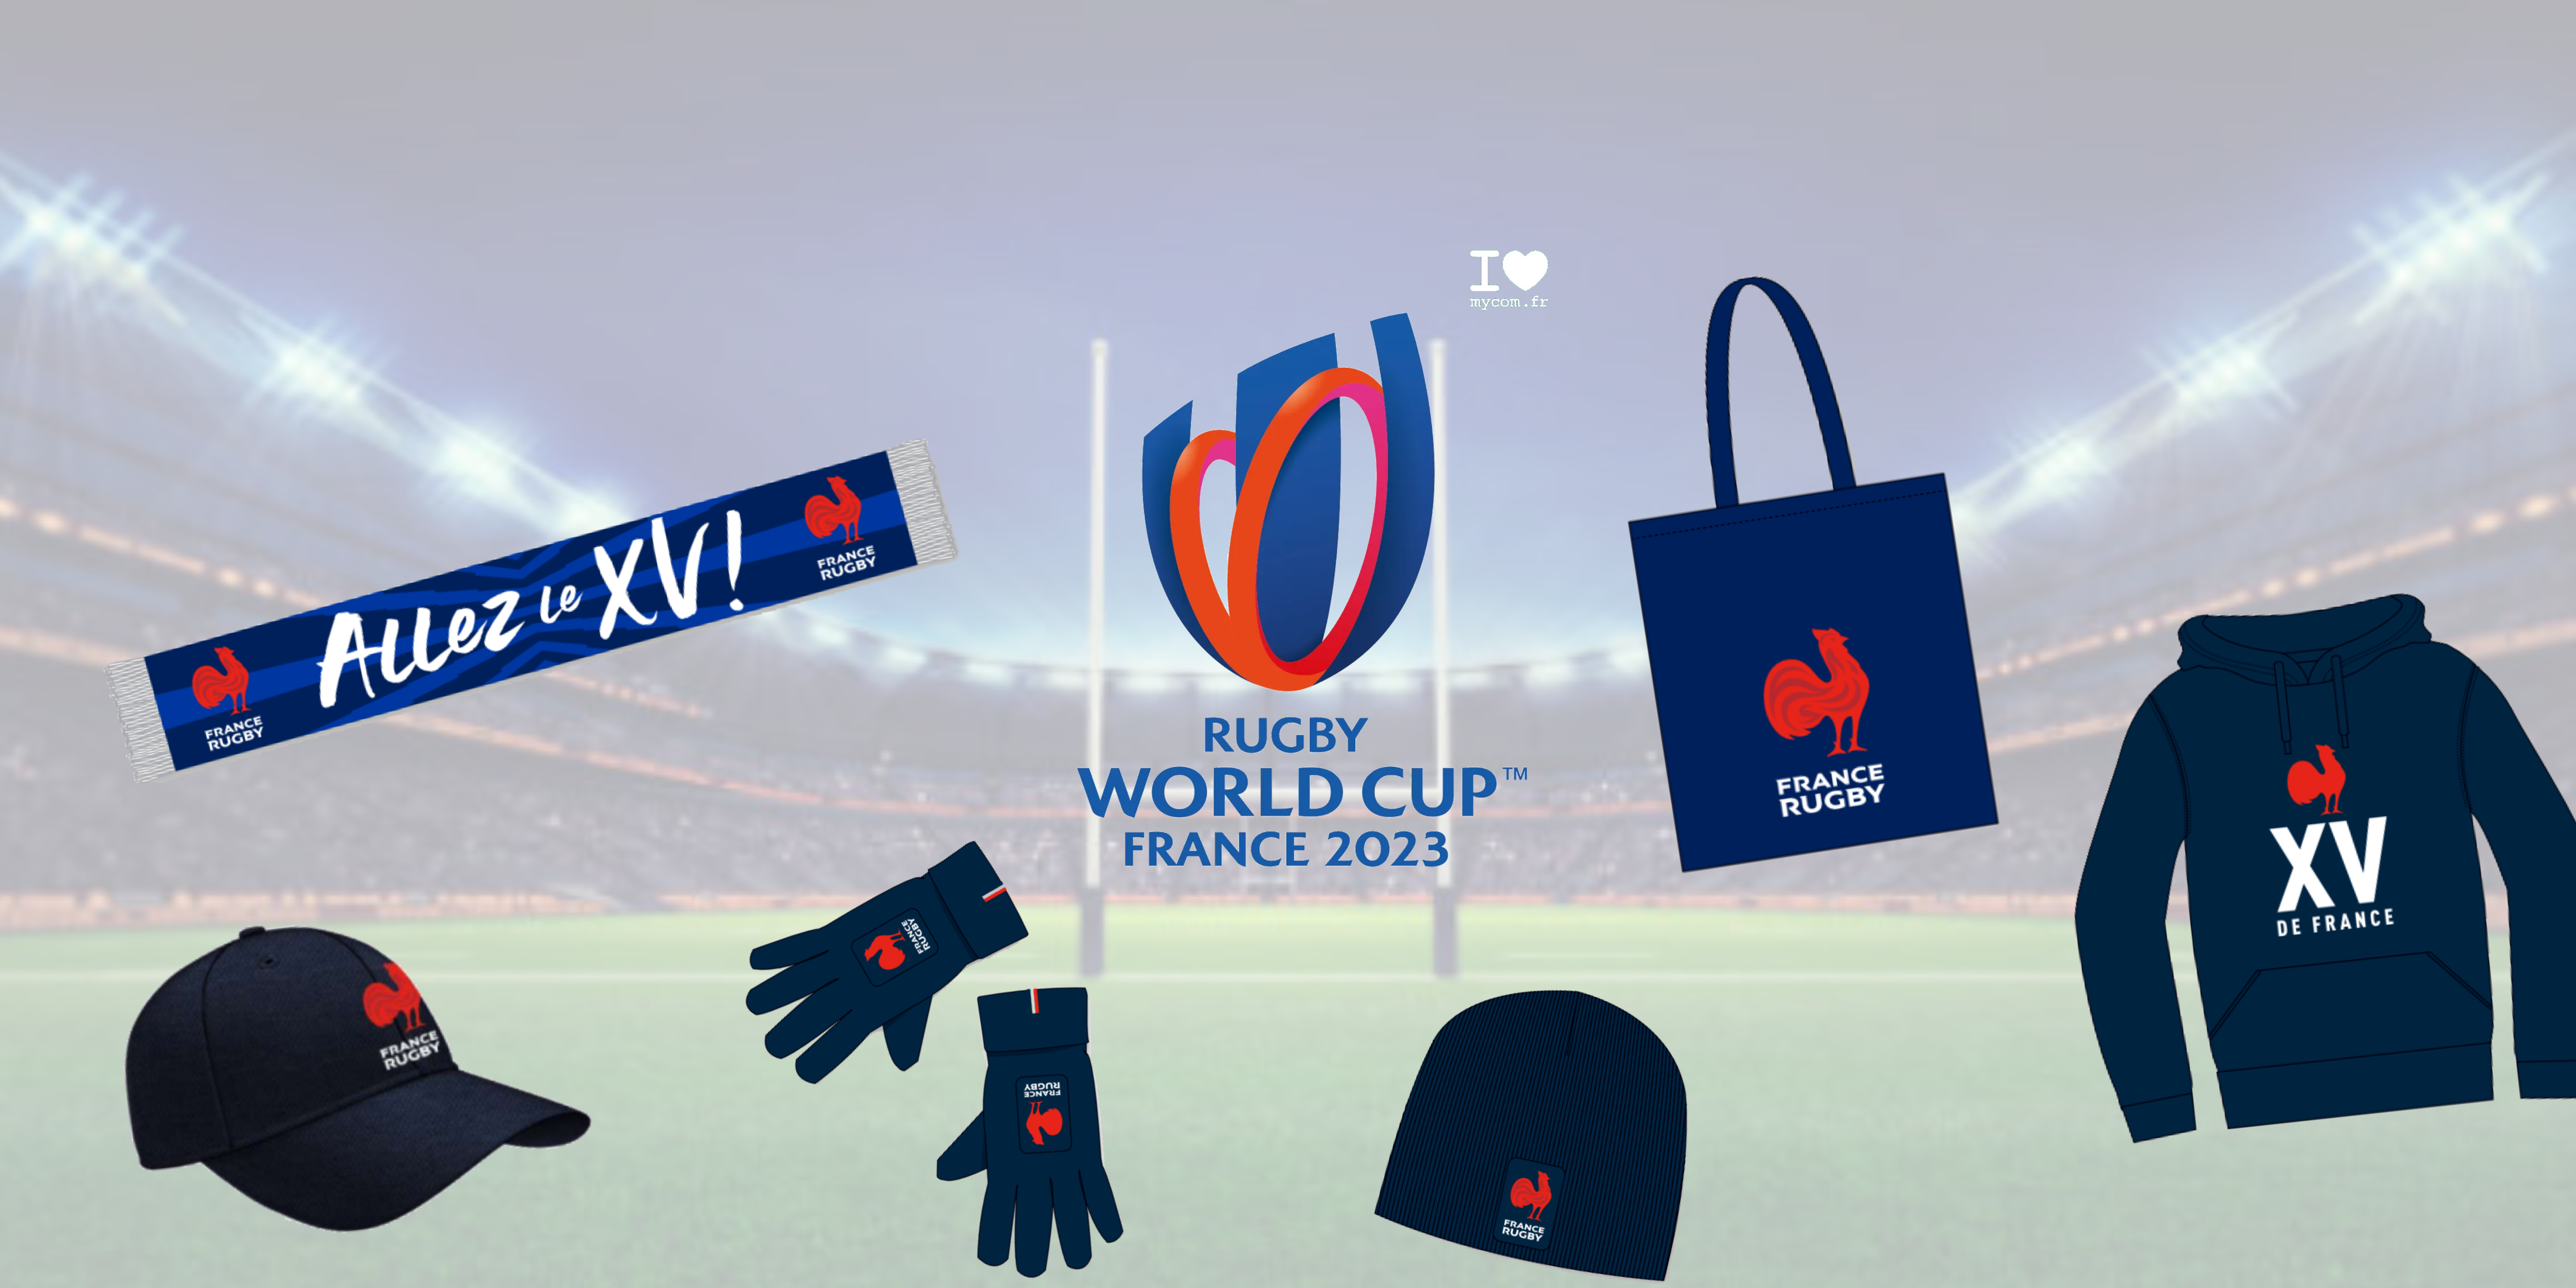 Préparez-vous pour la Coupe du monde de rugby 2023 en France !